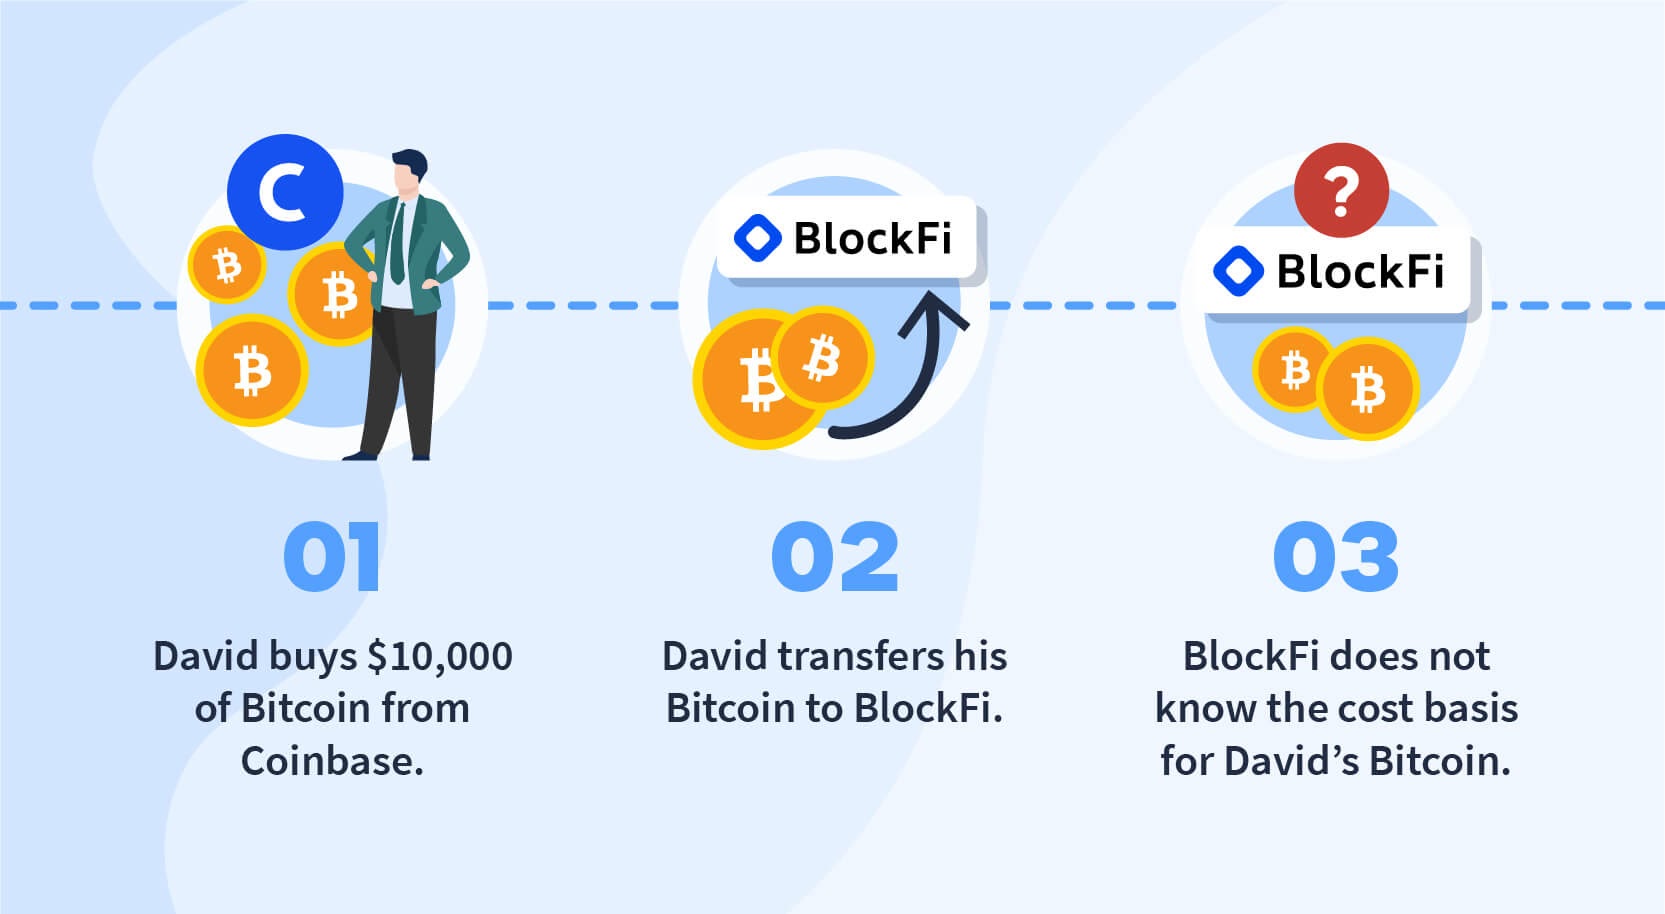 BlockFi tracking cost basis